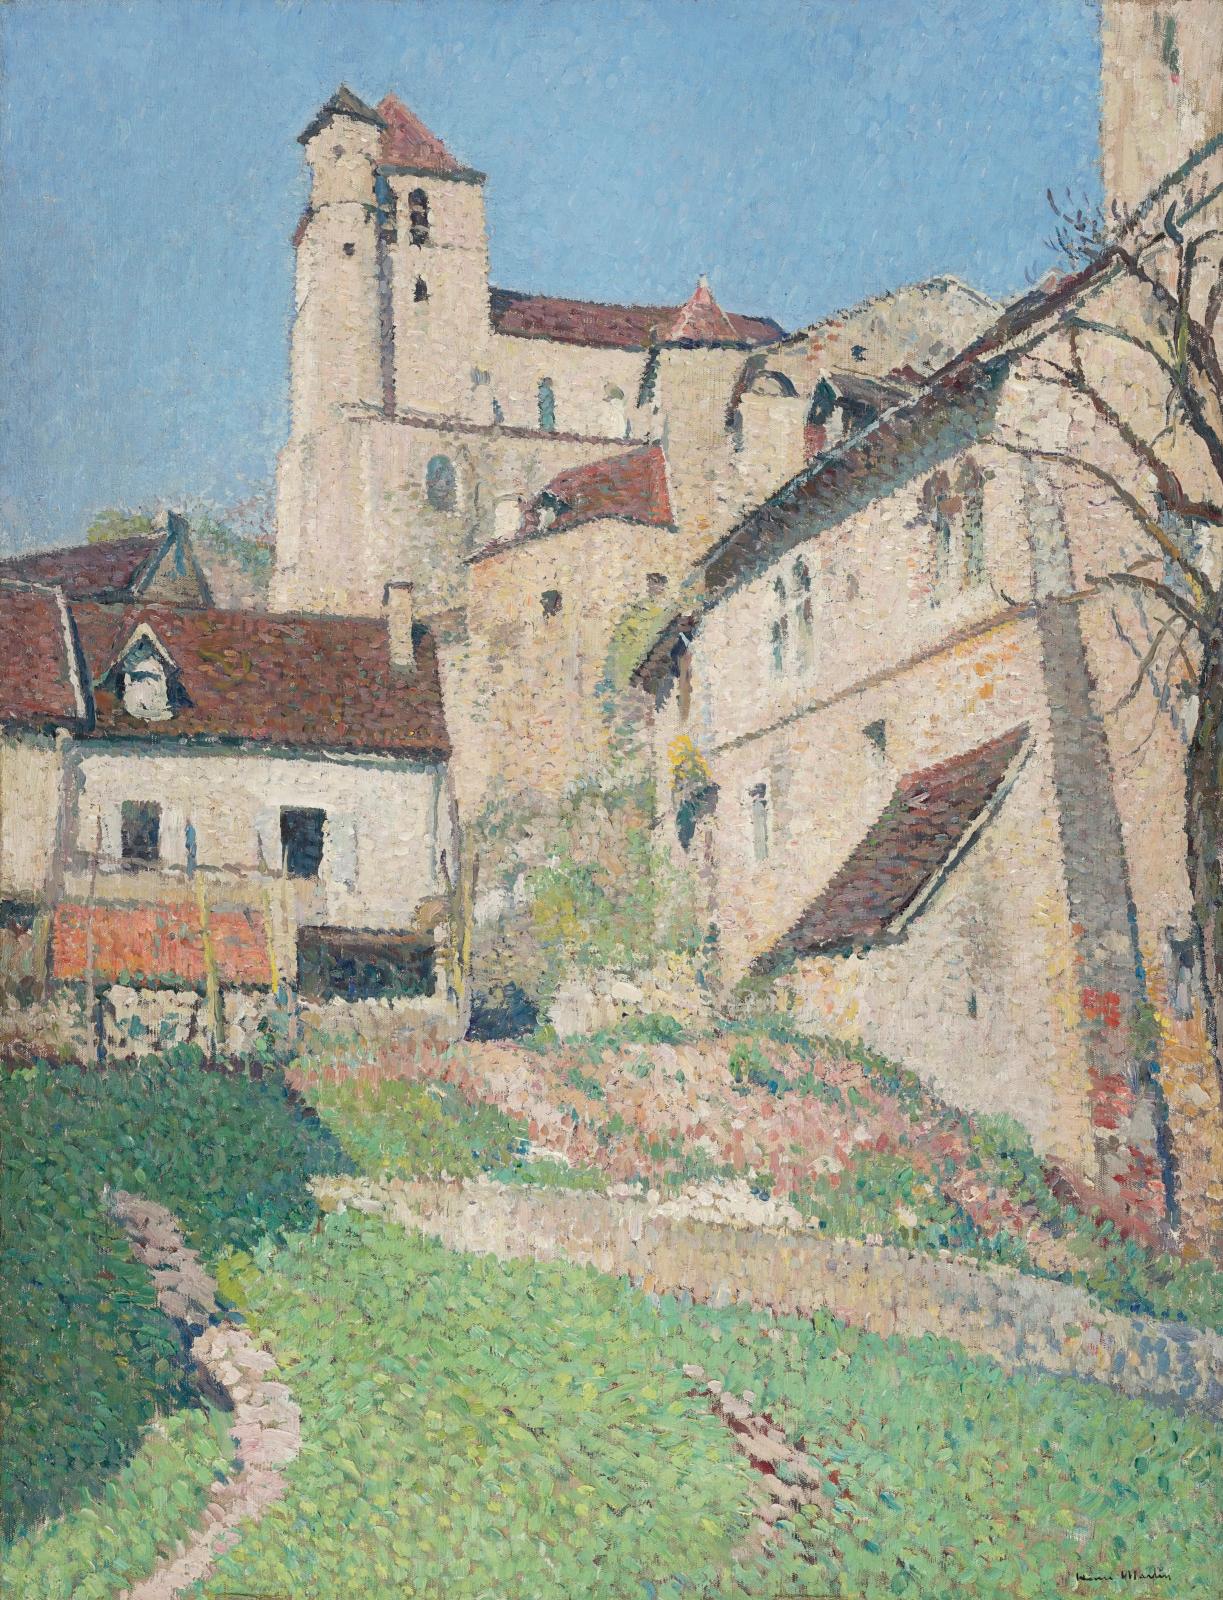 En 1912, Henri Martin achète une maison à Saint-Cirq-Lapopie, village médiéval accroché à une falaise surplombant le Lot. C’est la seconde